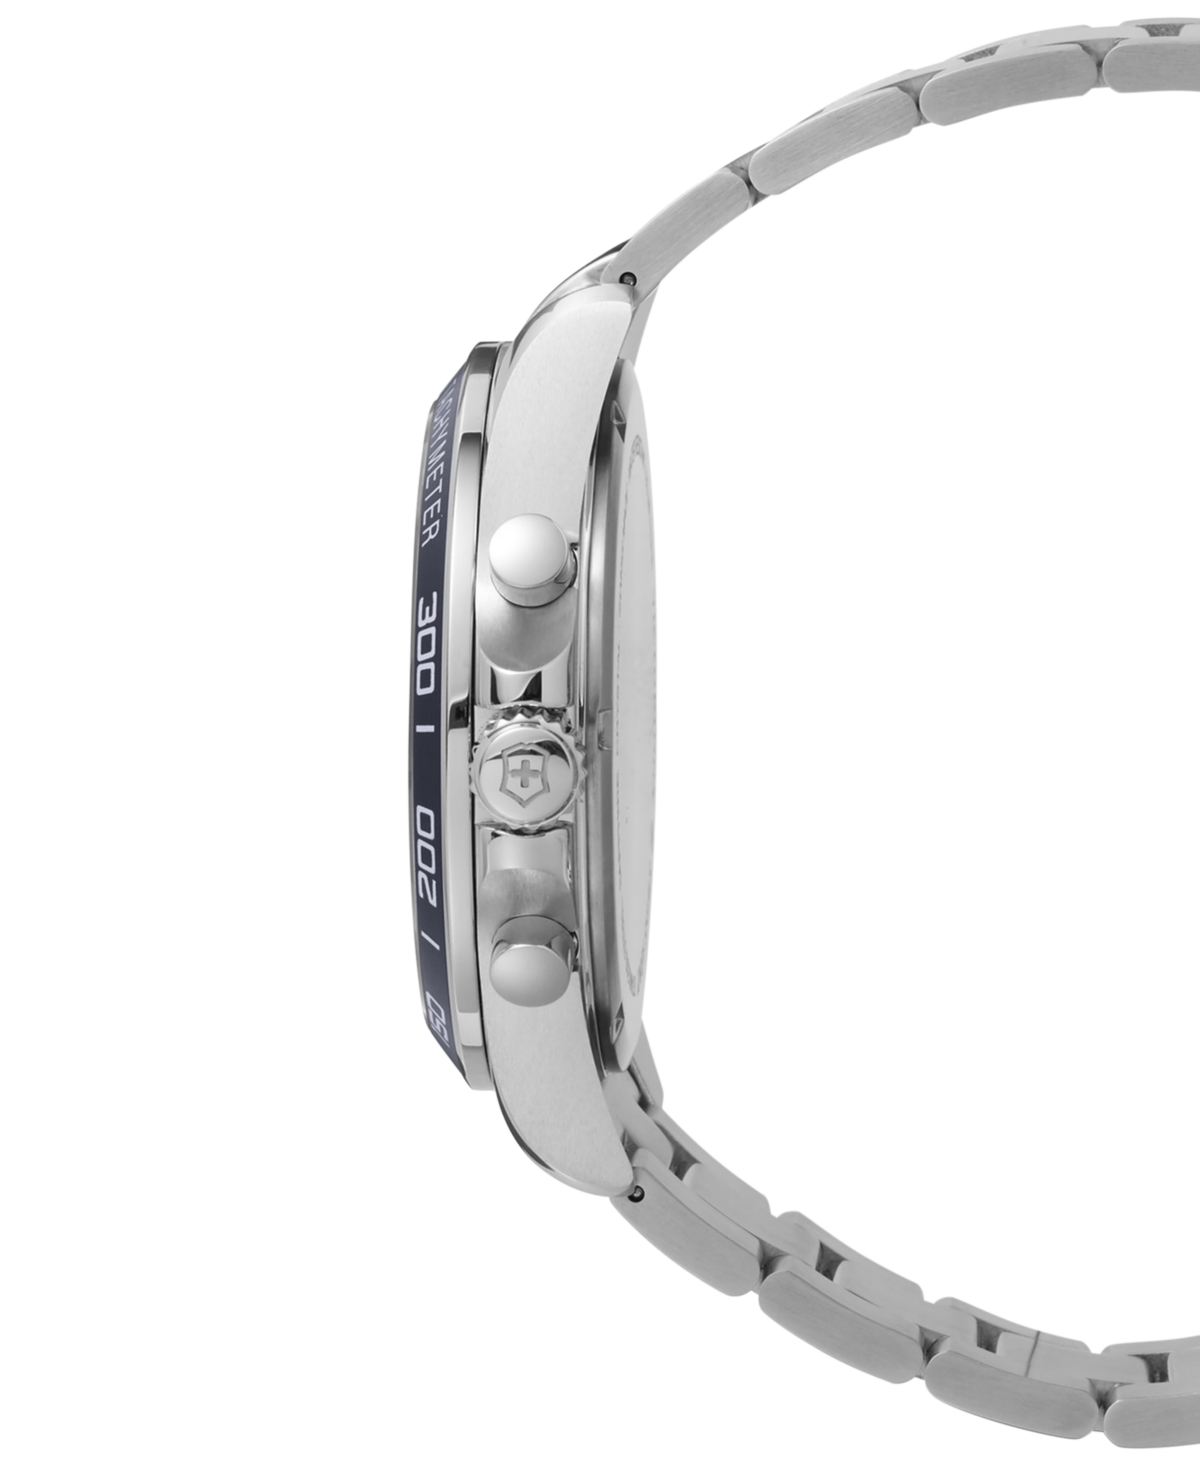 Shop Victorinox Swiss Army Men's Chronograph Fieldforce Stainless Steel Bracelet Watch 42mm In Blue